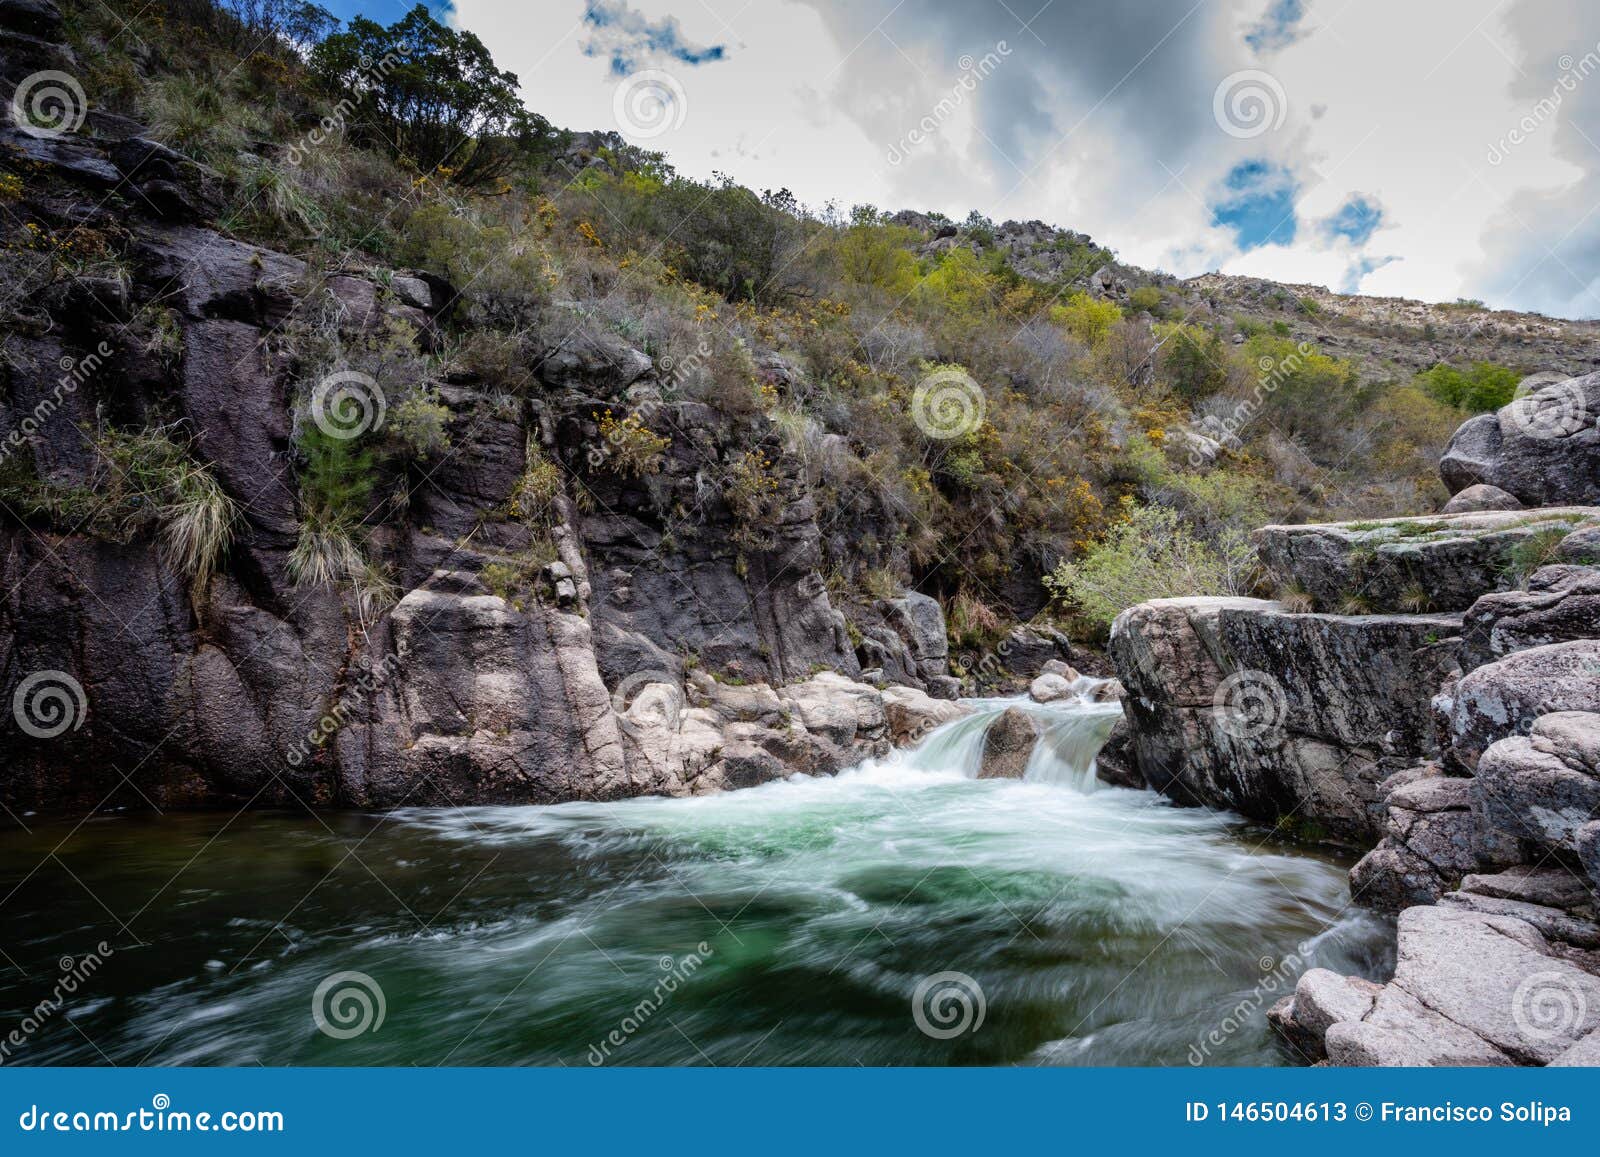 portela do homem waterfall in peneda geres natural park, portugal